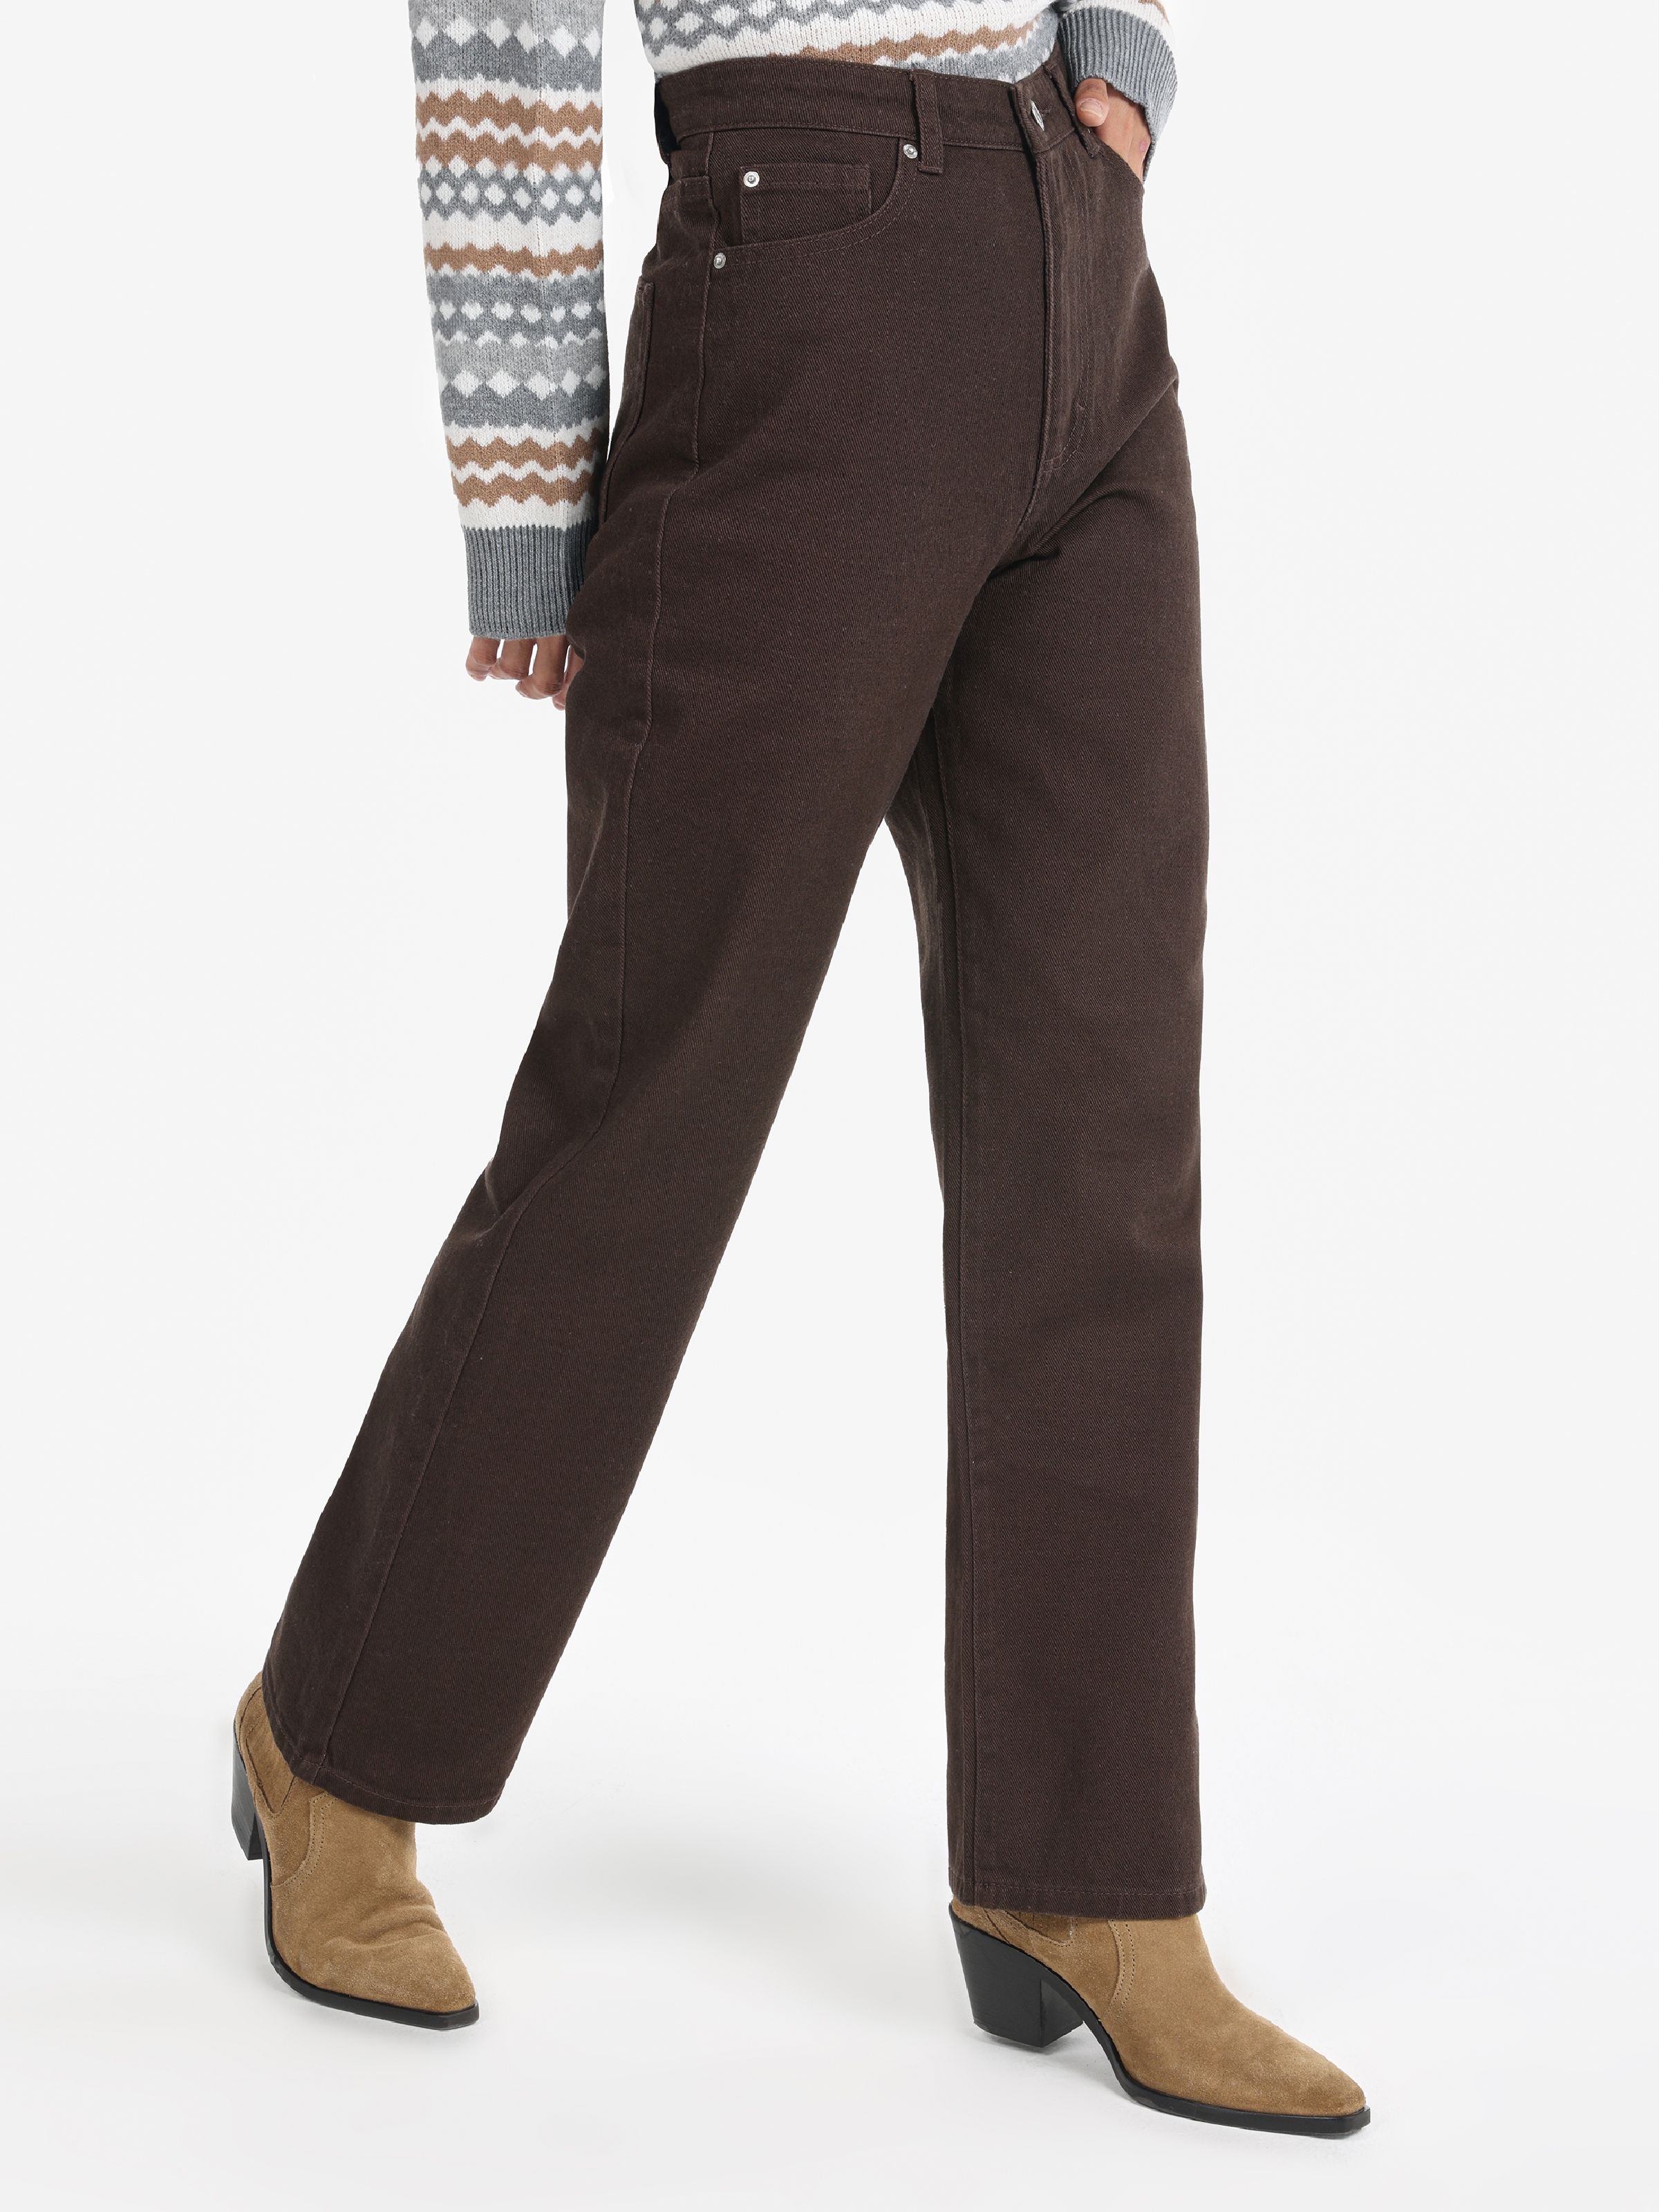 Afficher les détails de Pantalon Femme Marron Taille Haute Coupe Regular Jambe Large